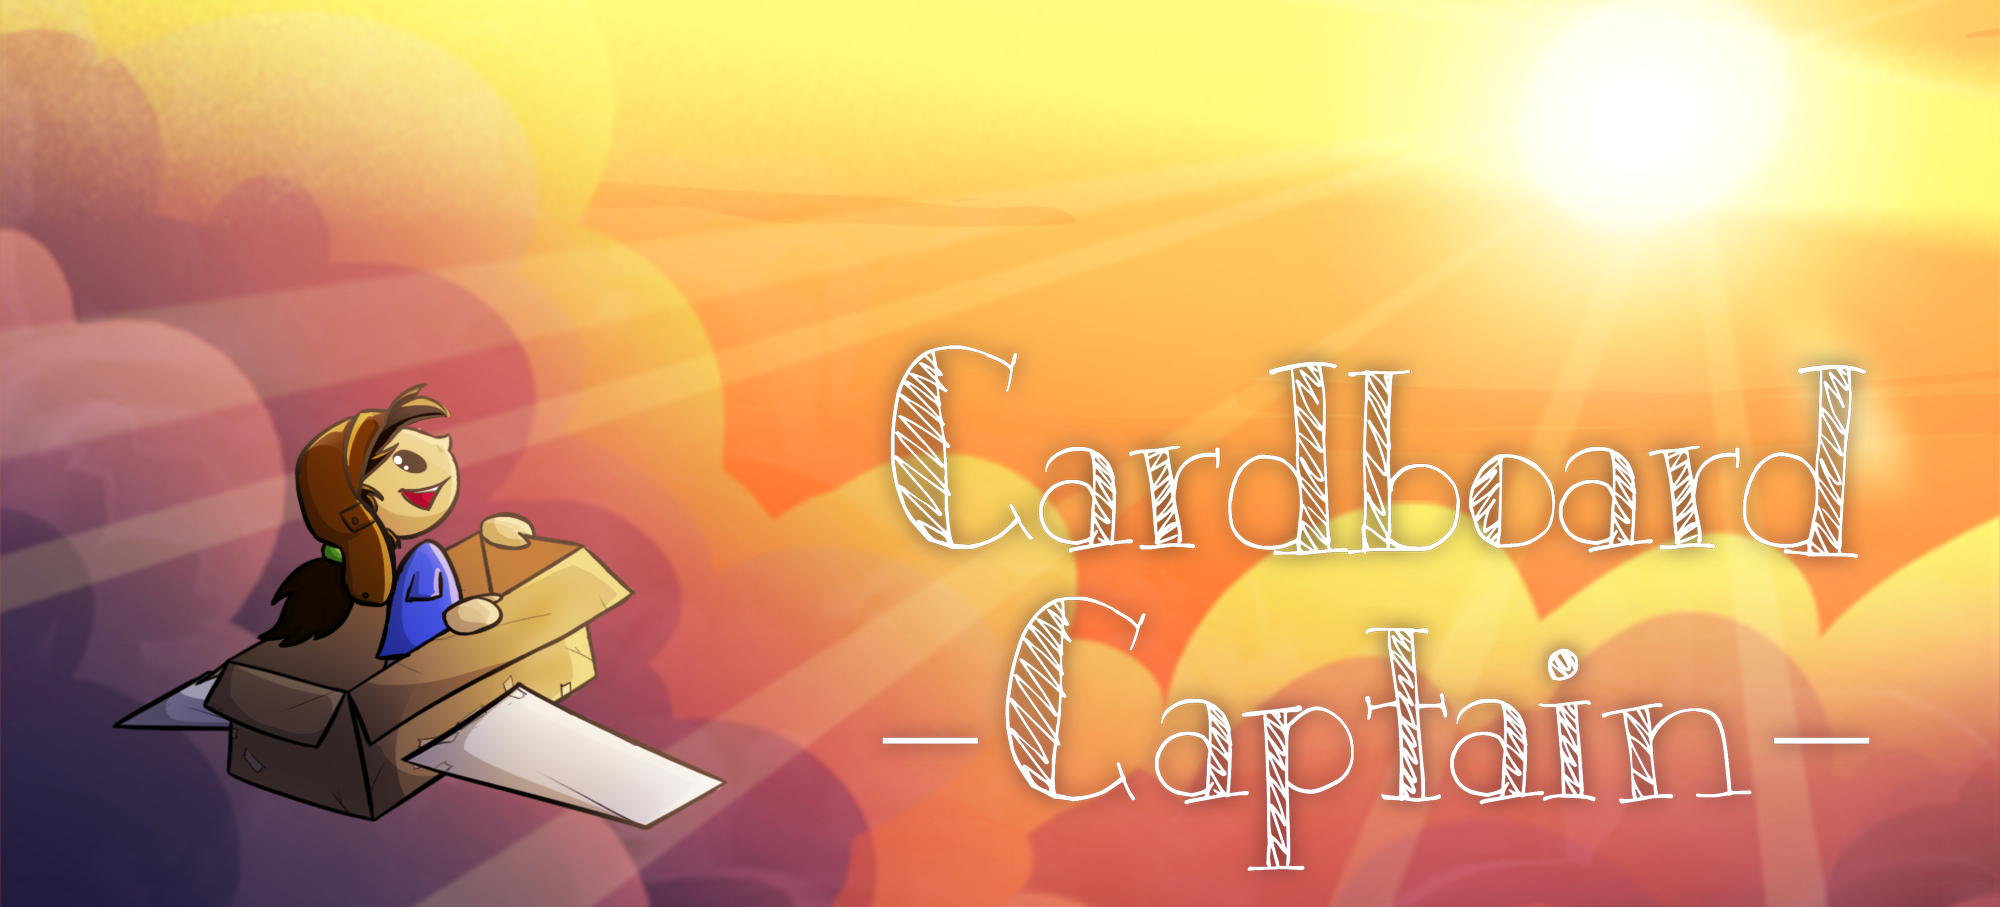 Cardboard Captain